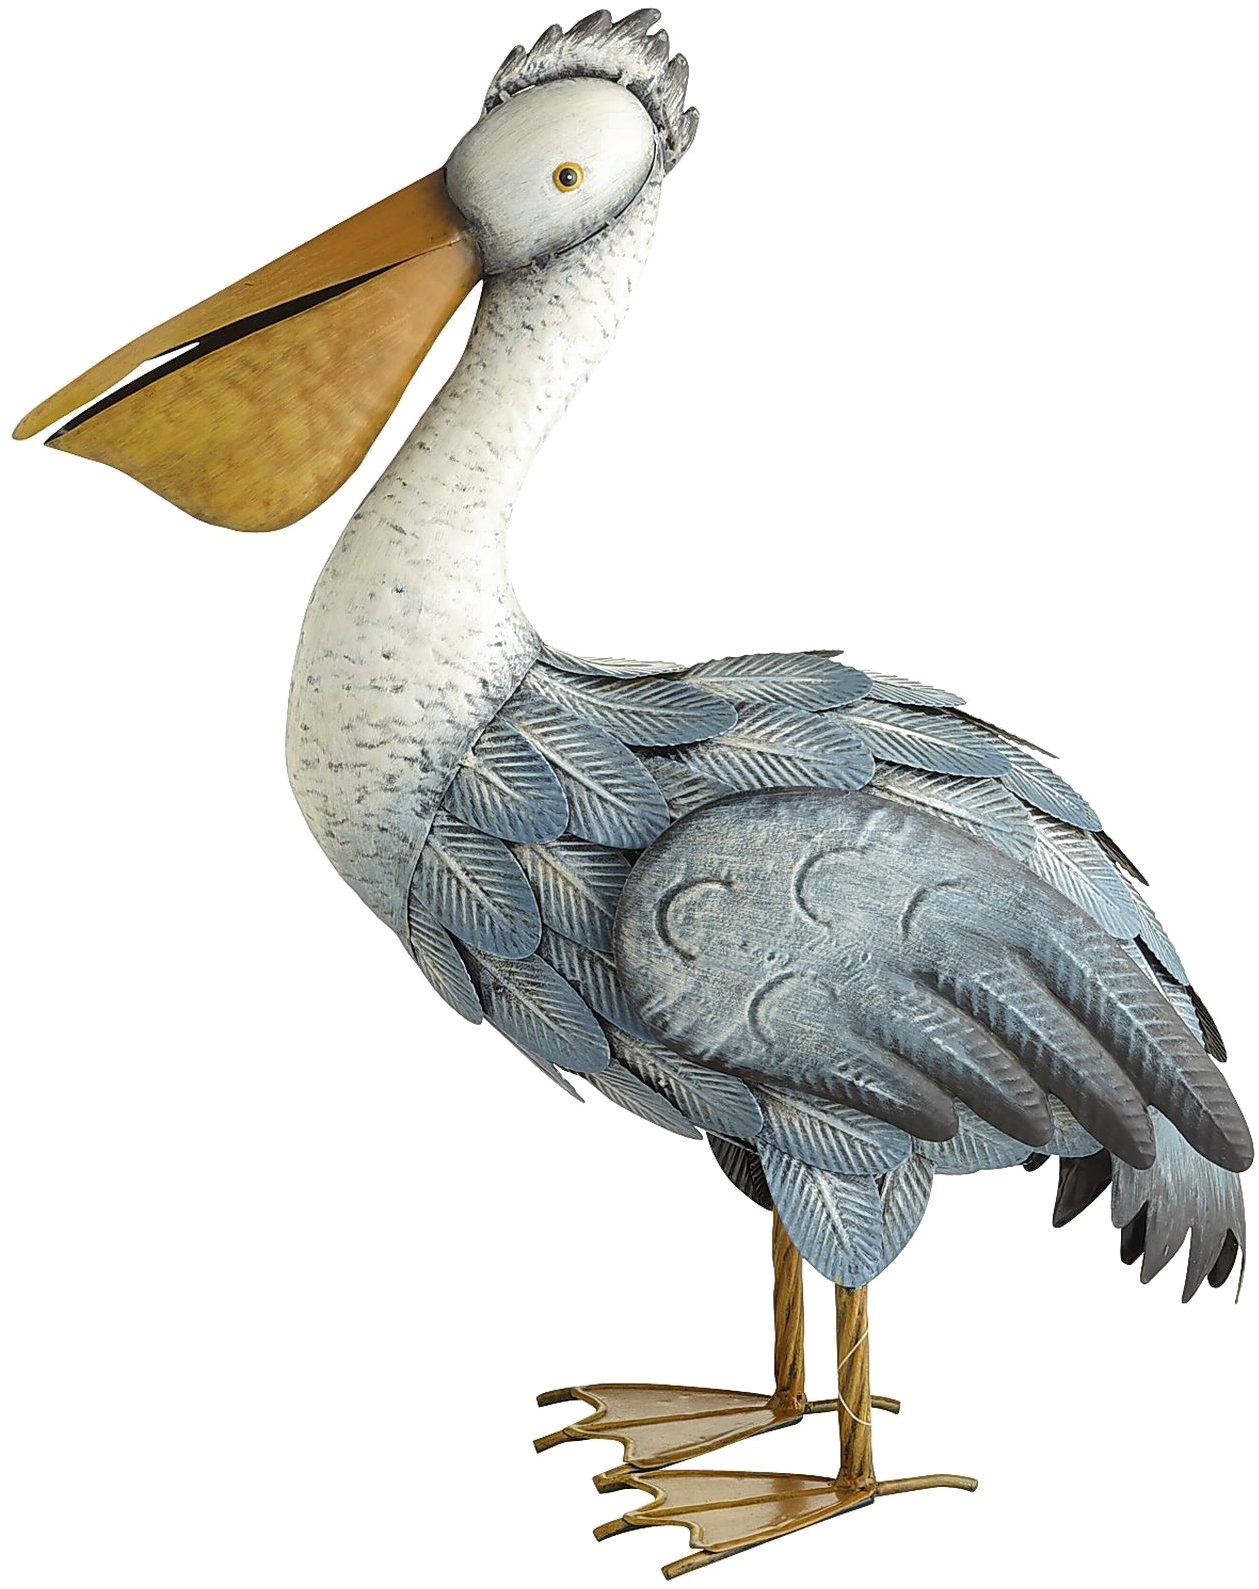 A Metal Bird With A Long Beak